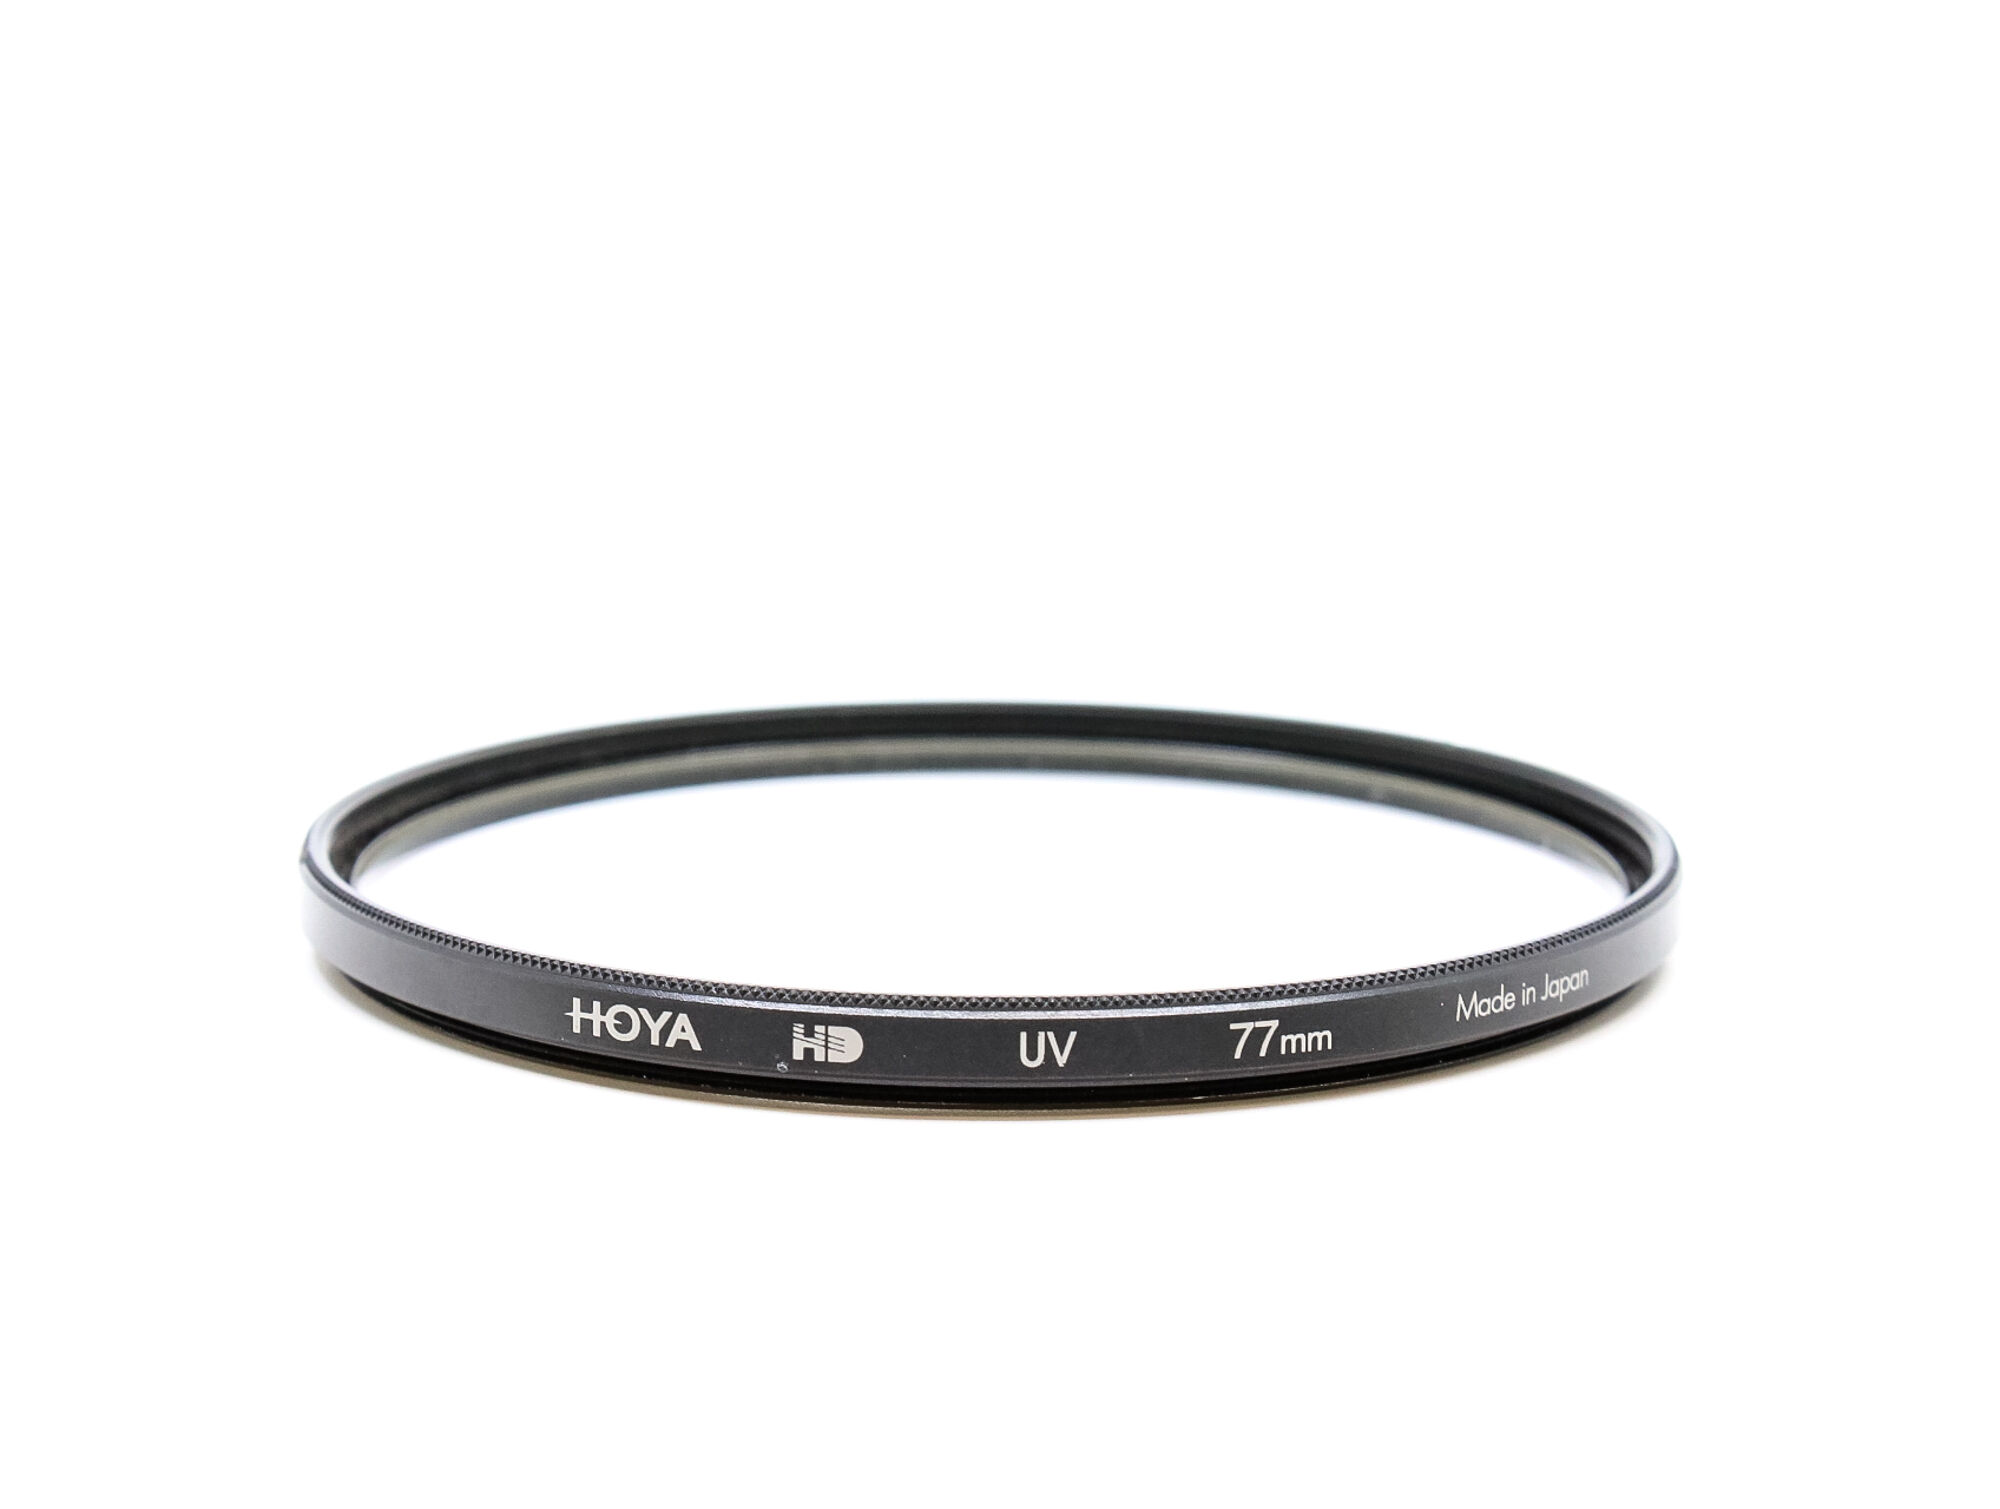 Hoya 77mm HD UV Filter (Condition: Good)